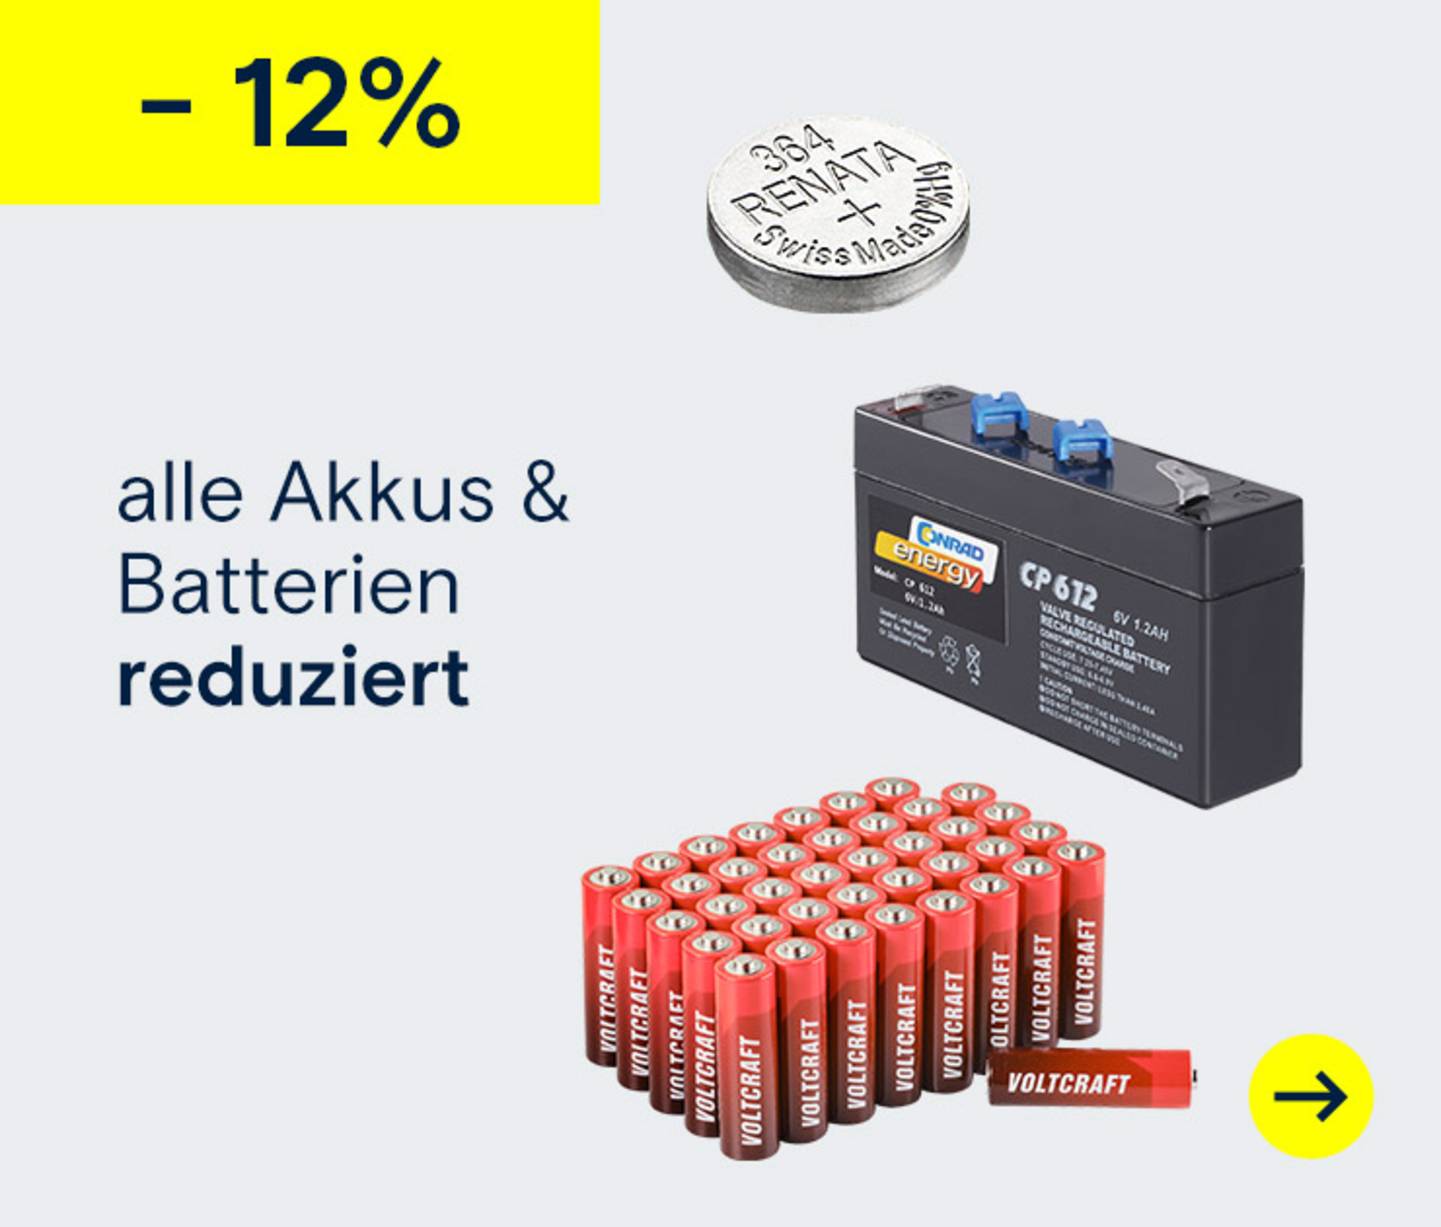 12% Rabatt auf alle Akkus und Batterien →